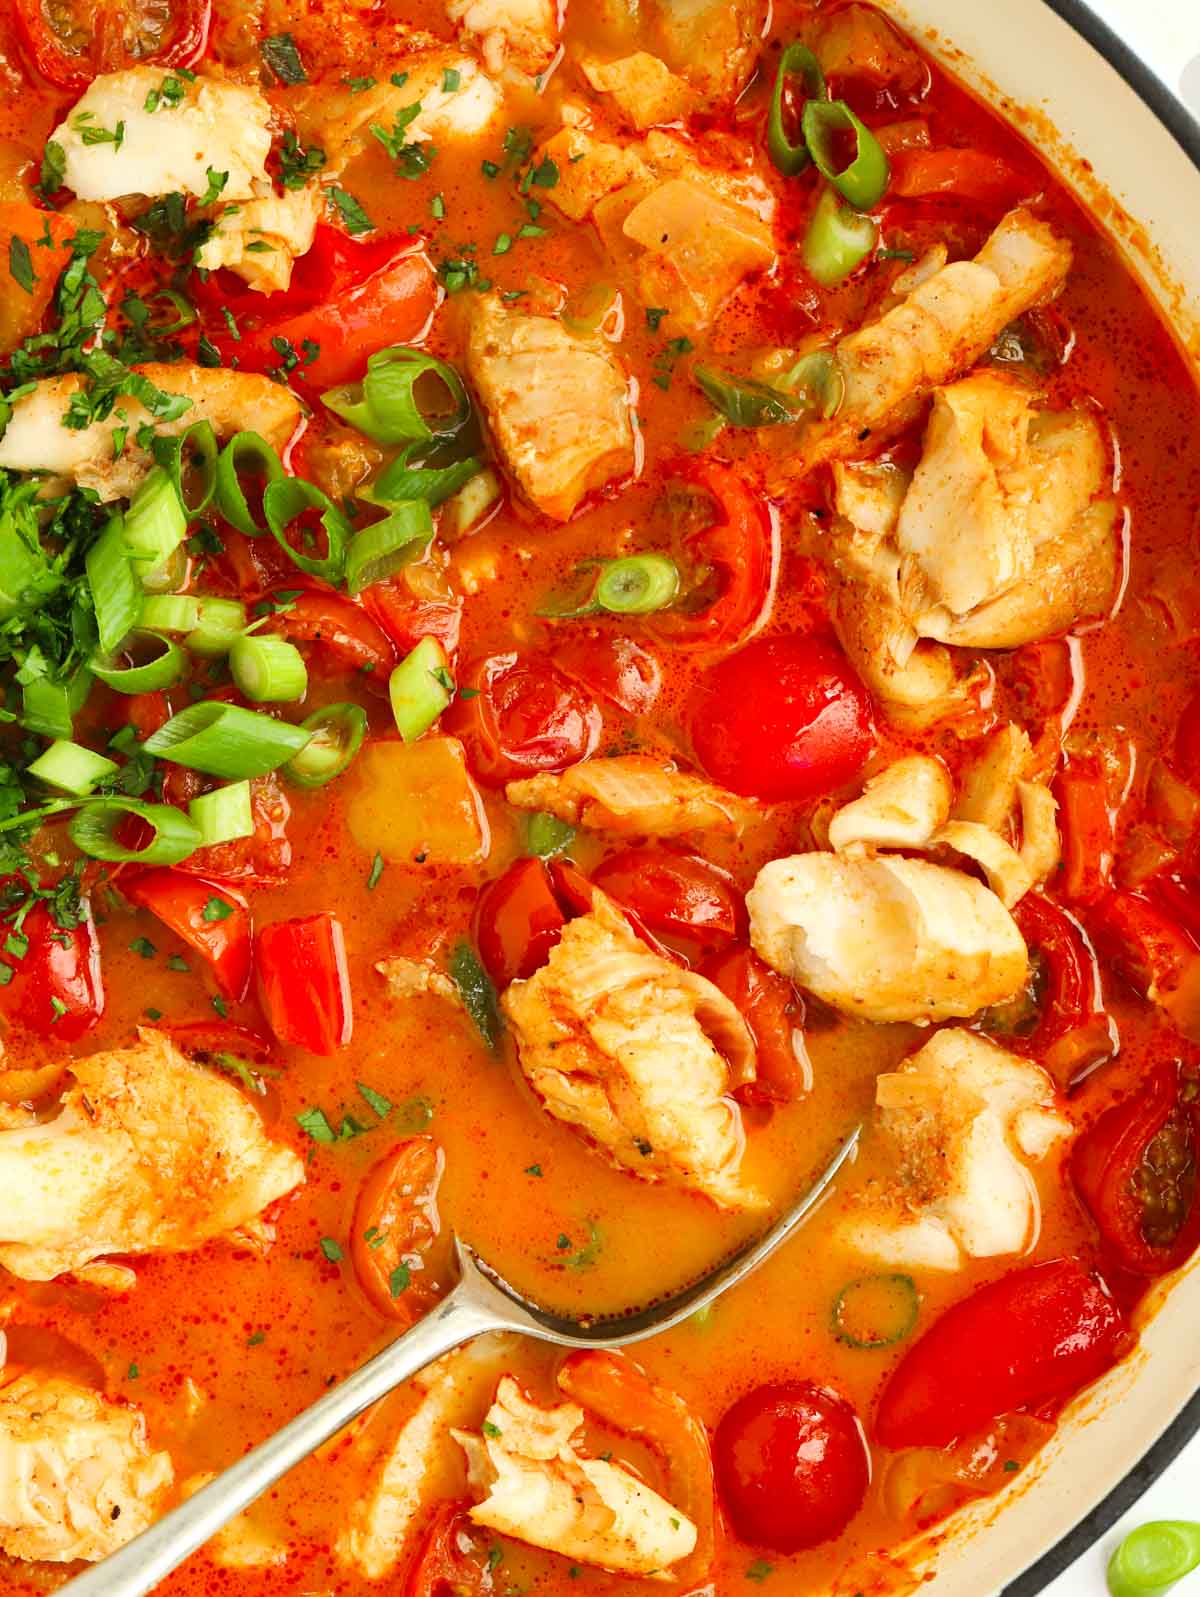 Simple Moqueca-style fish stew recipe